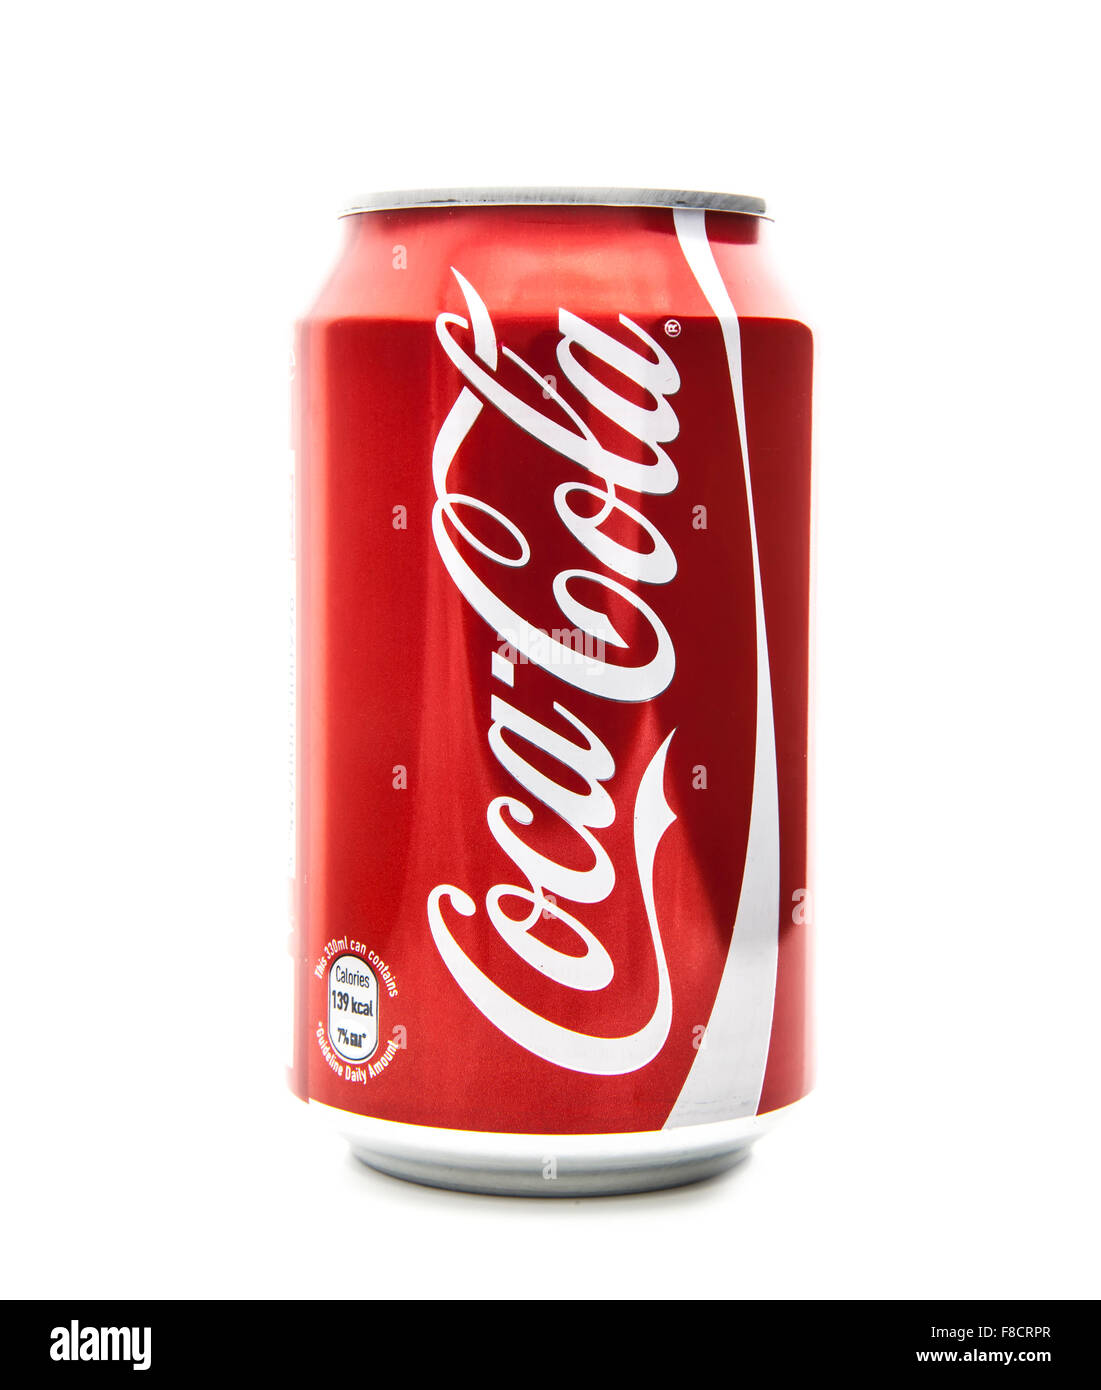 Coca cola Banque d'images détourées - Alamy